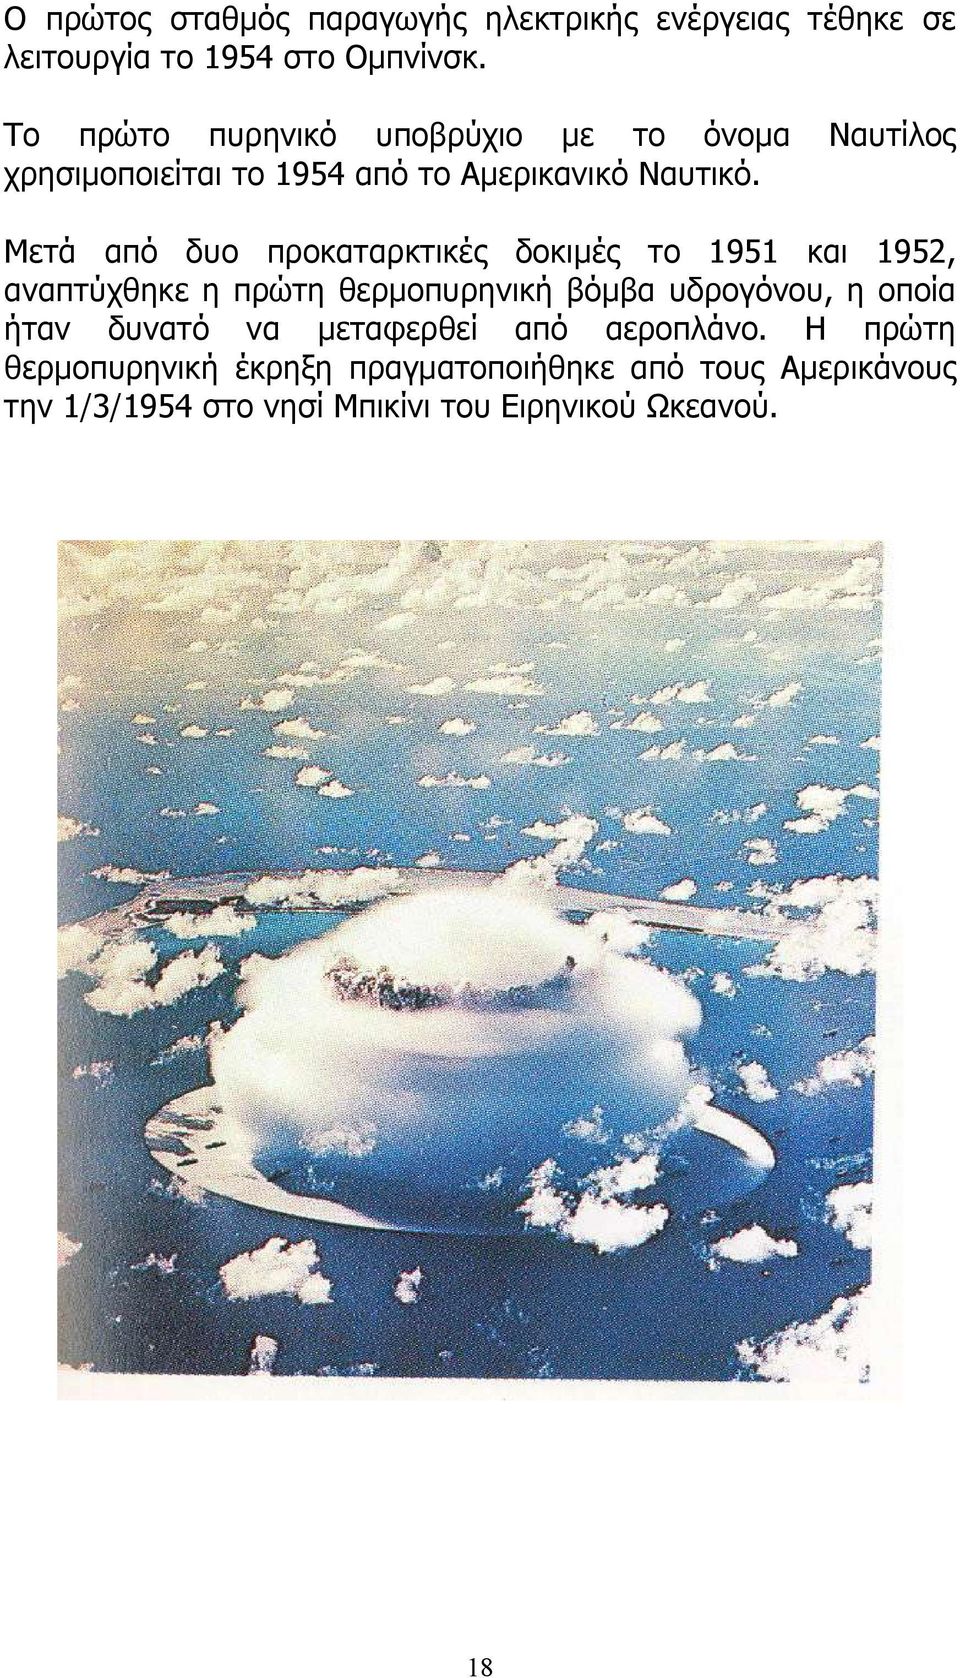 Ναυτίλος Μετά από δυο προκαταρκτικές δοκιμές το 1951 και 1952, αναπτύχθηκε η πρώτη θερμοπυρηνική βόμβα υδρογόνου, η